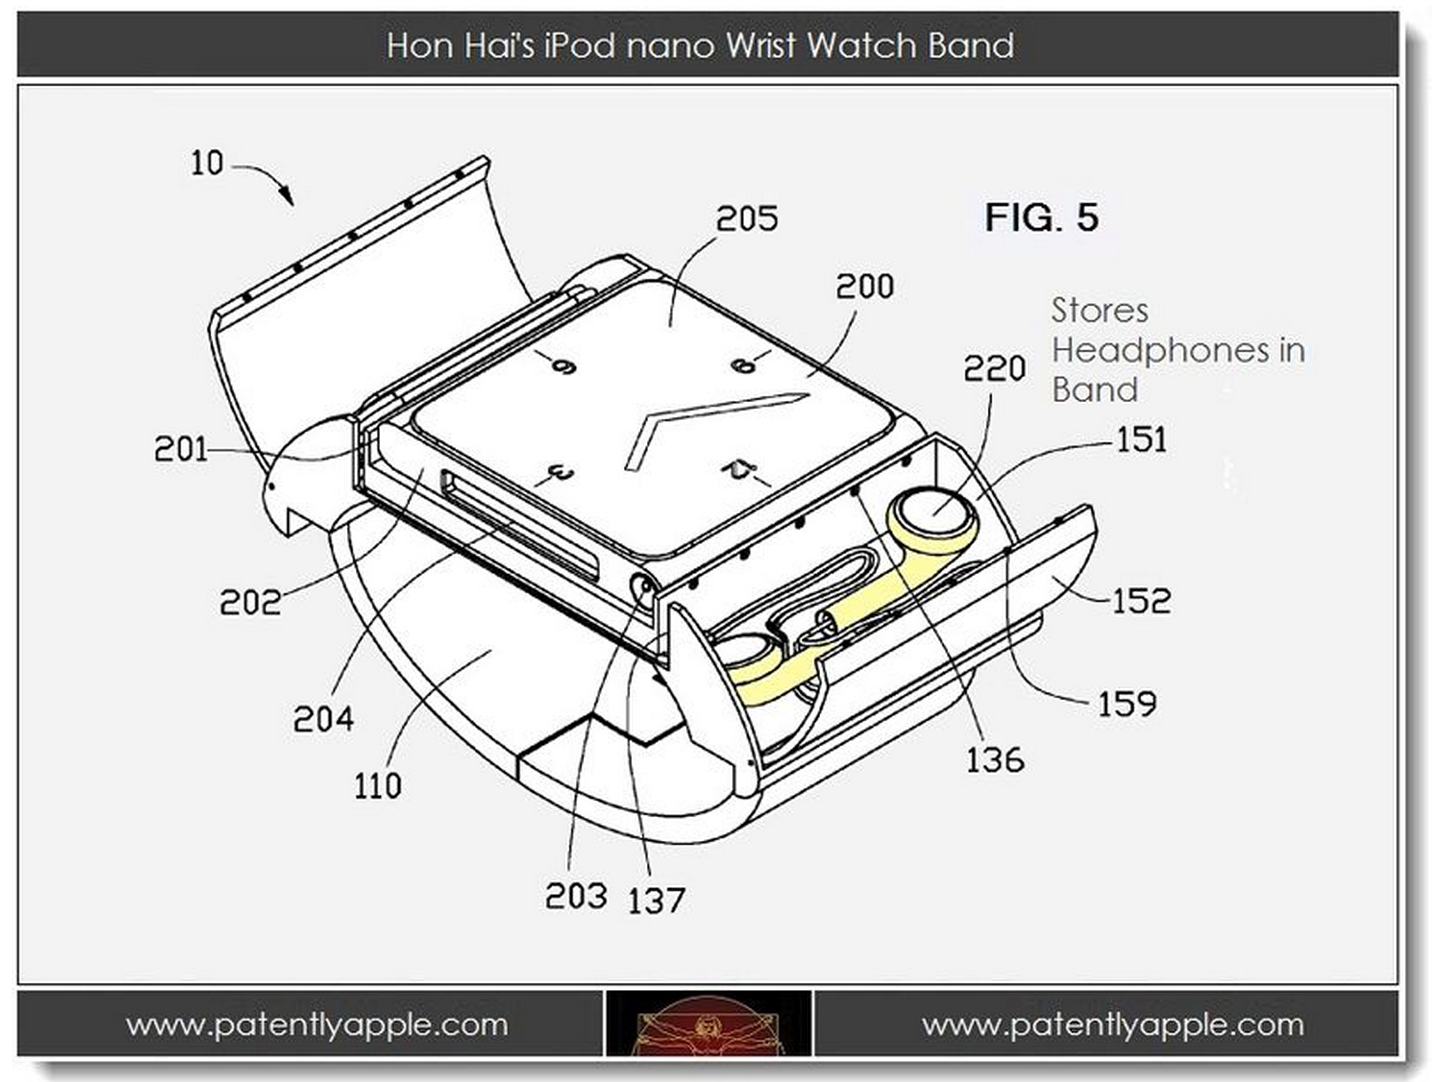 Foxconn-iPod-Nano-Watch-Strap